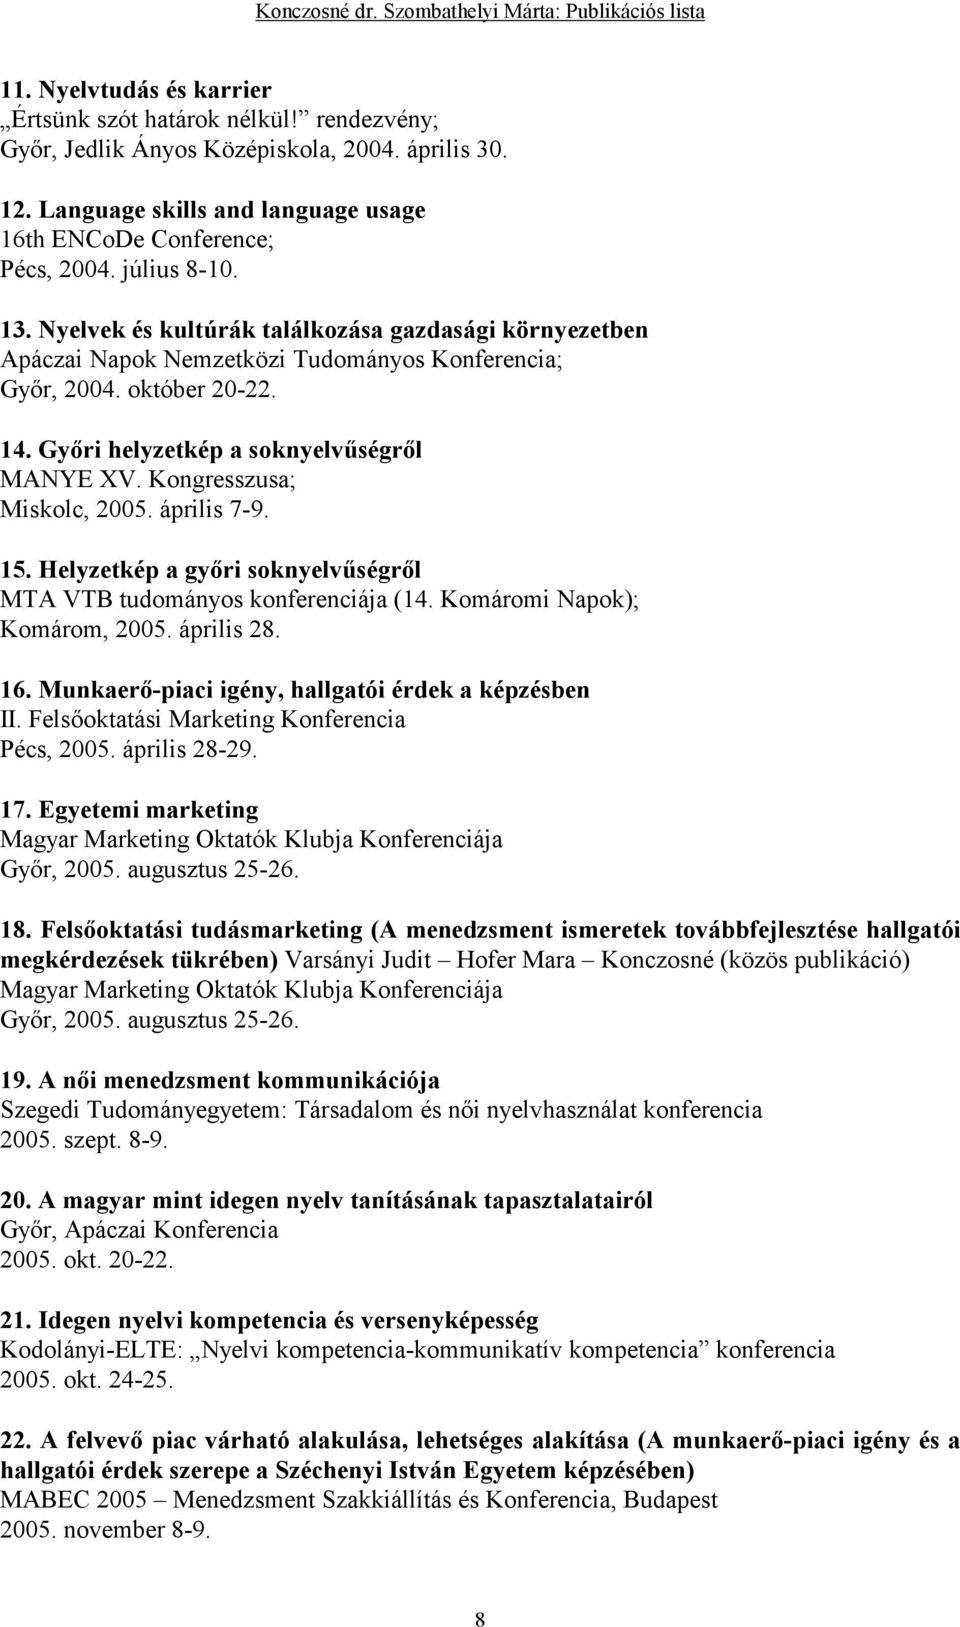 Kongresszusa; Miskolc, 2005. április 7-9. 15. Helyzetkép a gyıri soknyelvőségrıl MTA VTB tudományos konferenciája (14. Komáromi Napok); Komárom, 2005. április 28. 16.